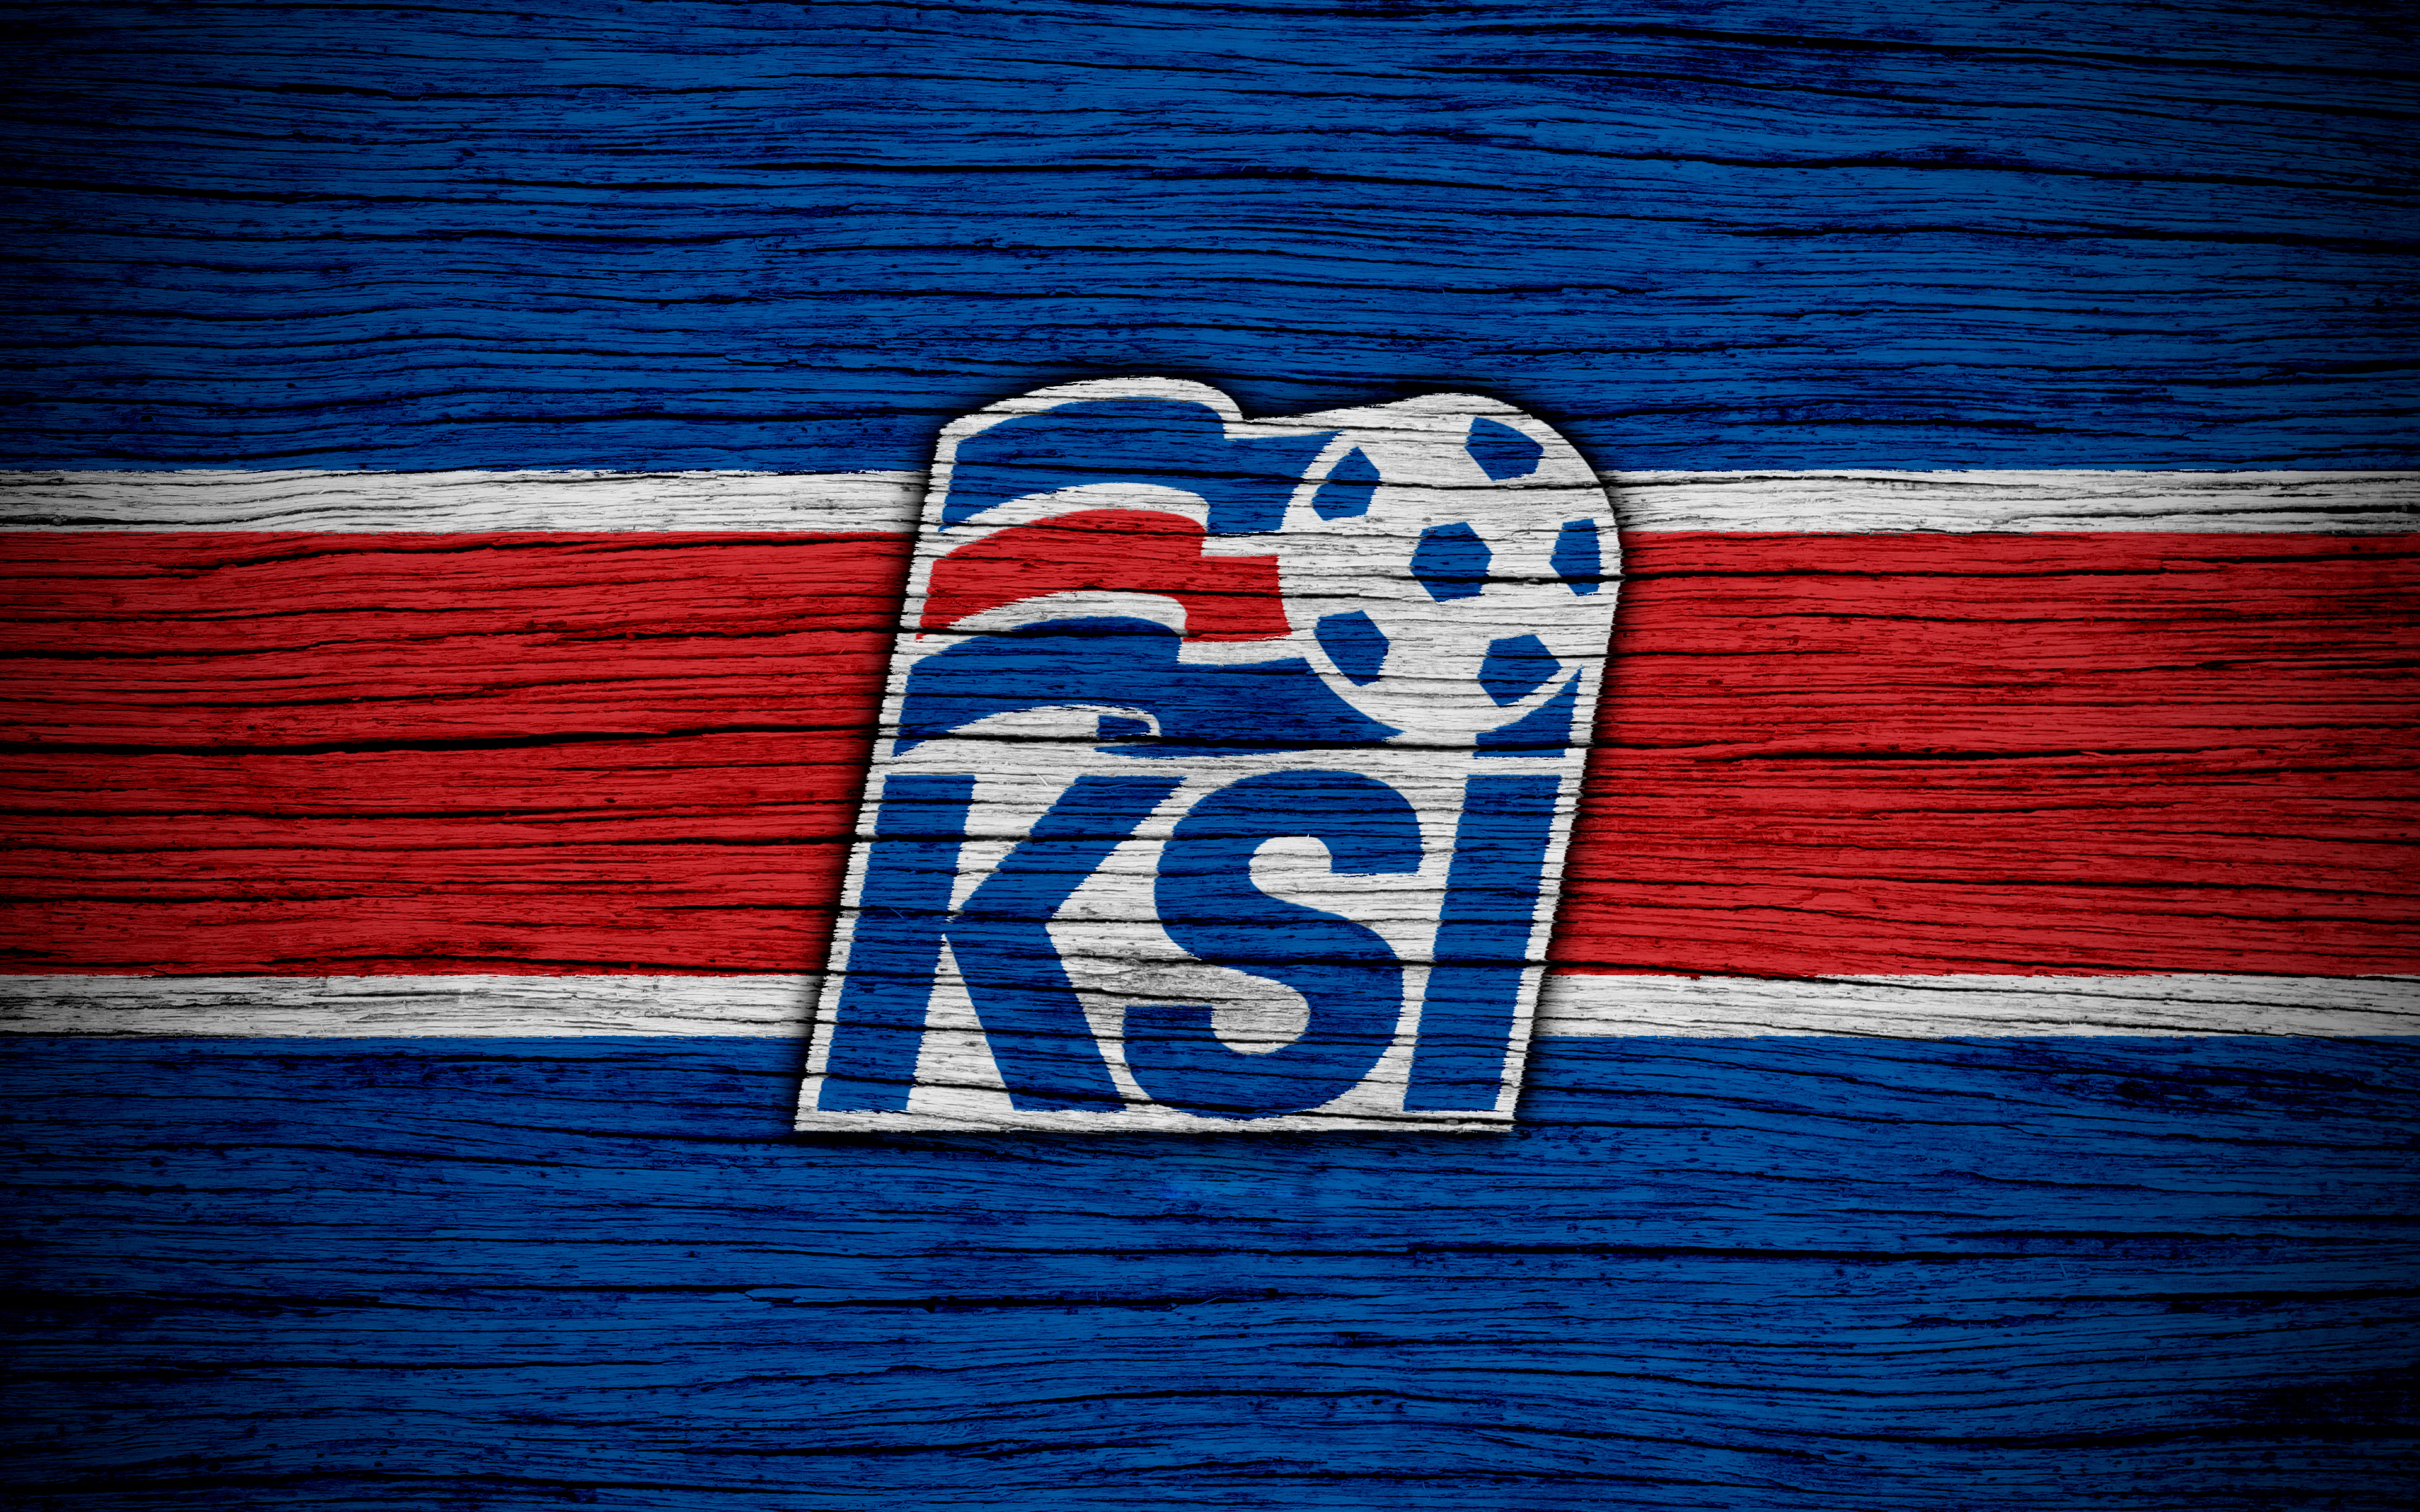 1531458 Шпалери і Збірна Ісландії З Футболу картинки на робочий стіл. Завантажити  заставки на ПК безкоштовно